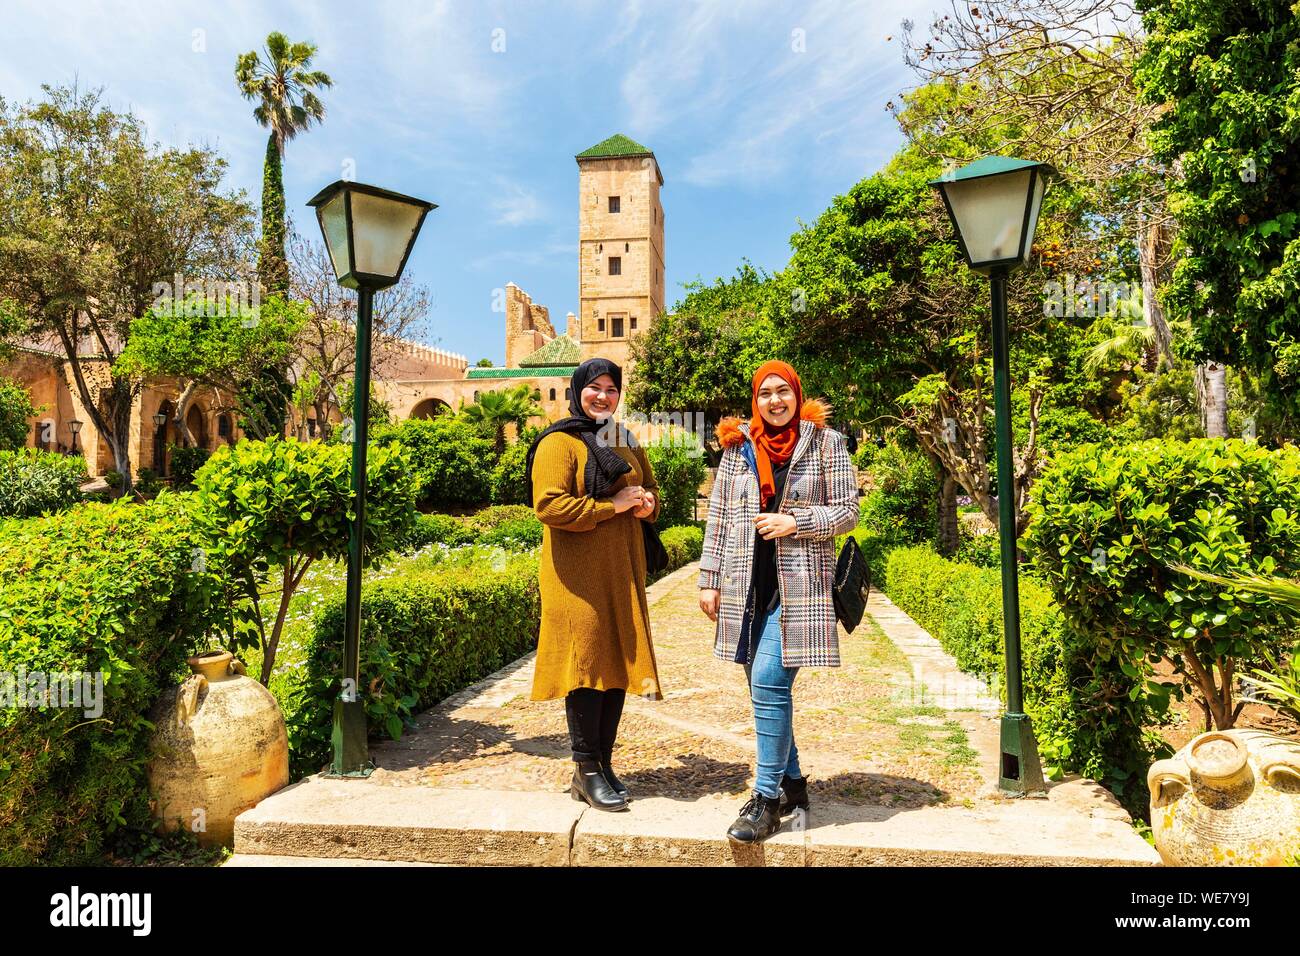 Marruecos, Rabat, catalogado como Patrimonio Mundial por la UNESCO, Udayas Oudaïas kasbah kasbah (des), el jardín andaluz, estudiantes Foto de stock